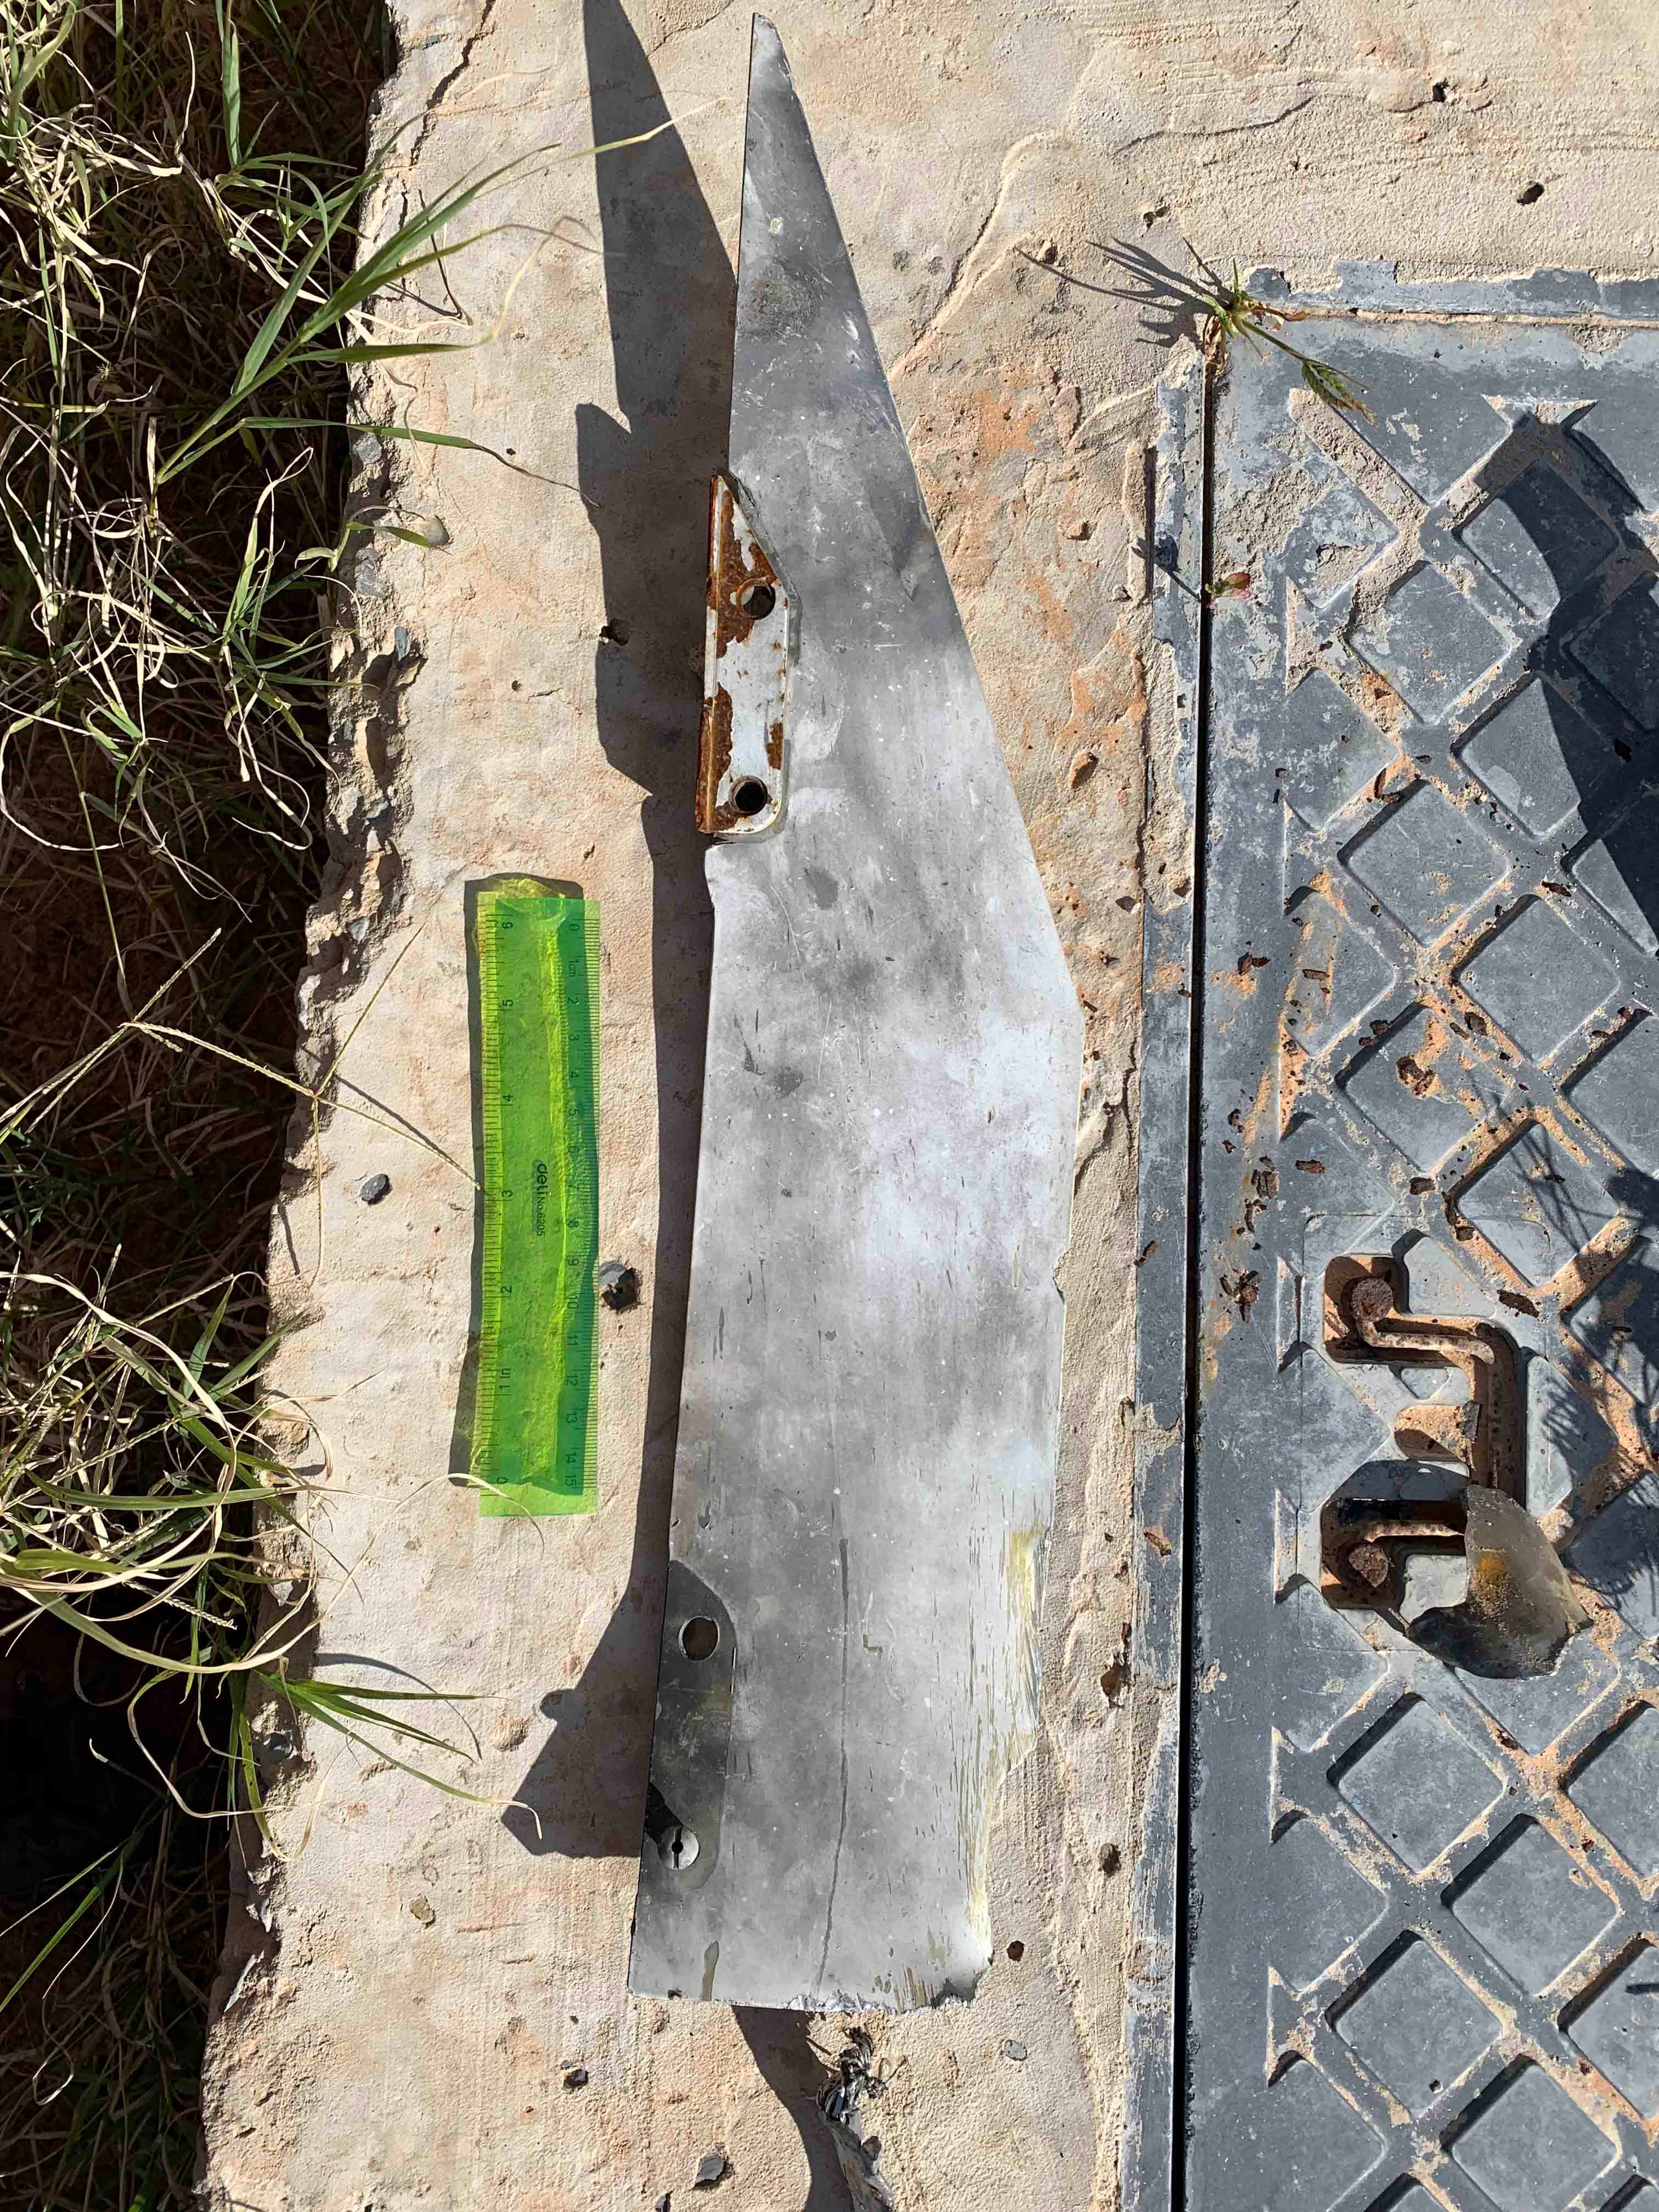 بقايا دعائم أجنحة من صاروخ جو-أرض من طراز "بلو آرو 7" أُطلِق من طائرة مسيّرة من طراز "وينغ لونغ 2"، وادي الربيع، ليبيا، ديسمبر/كانون الأول 2019. 